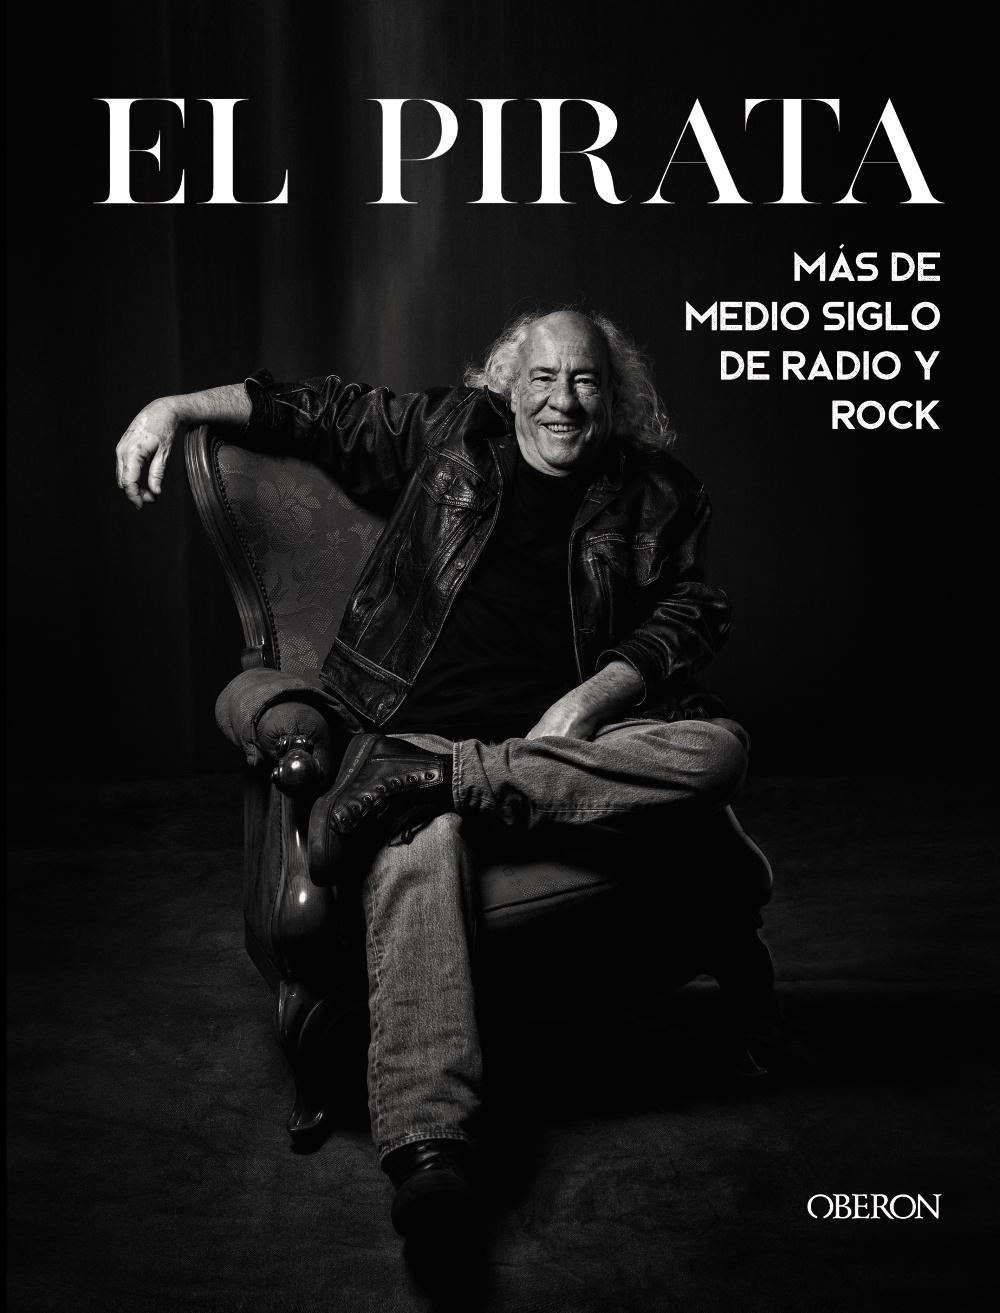 El Pirata "Más de Medio Siglo de Radio y Rock"